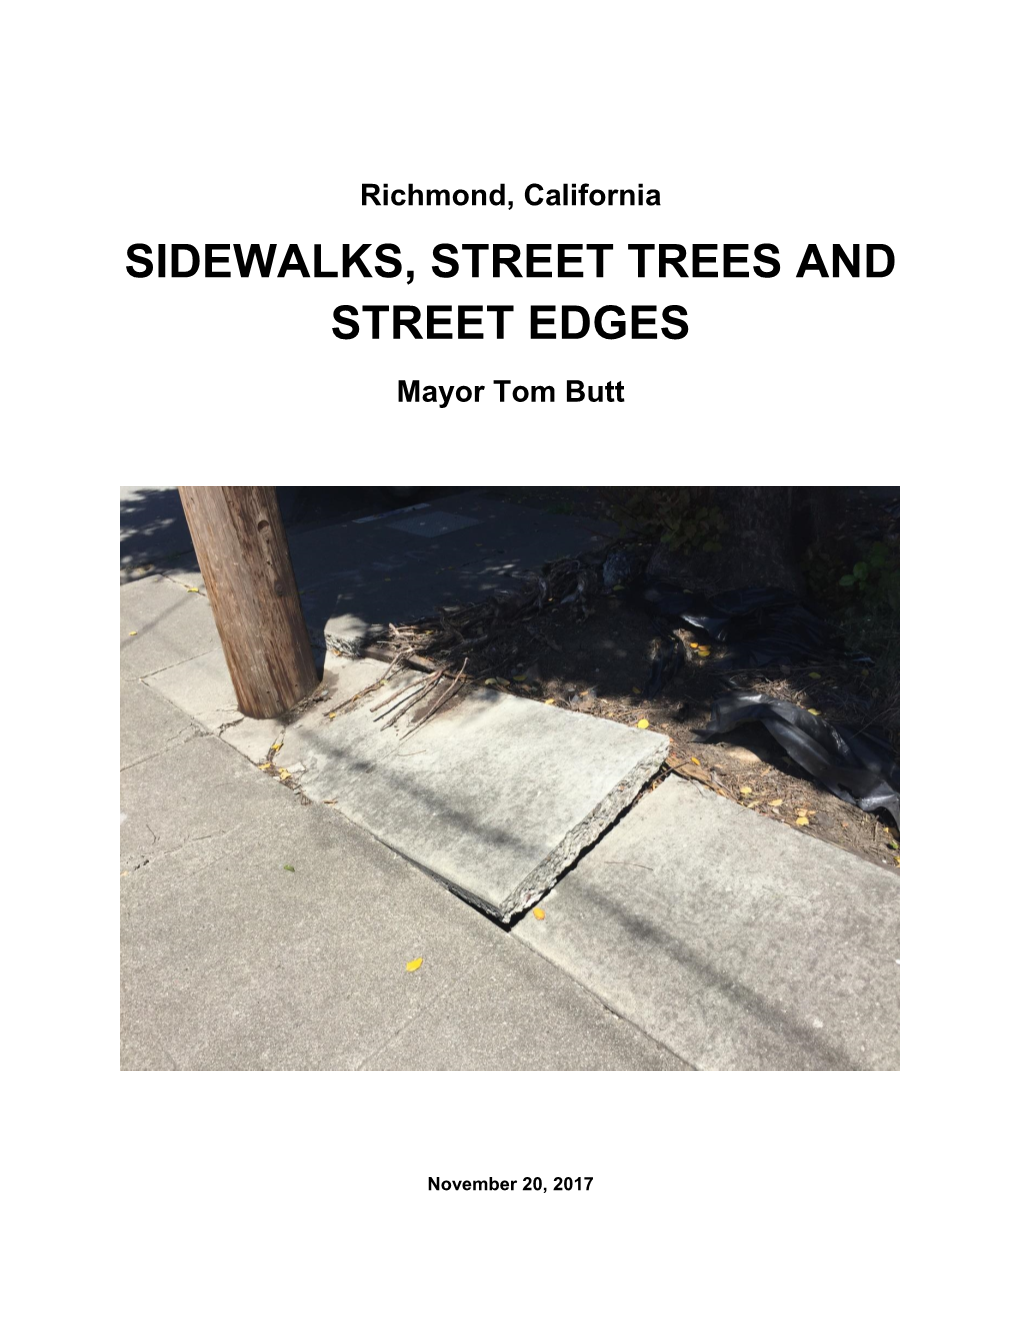 SIDEWALKS, STREET TREES and STREET EDGES Mayor Tom Butt